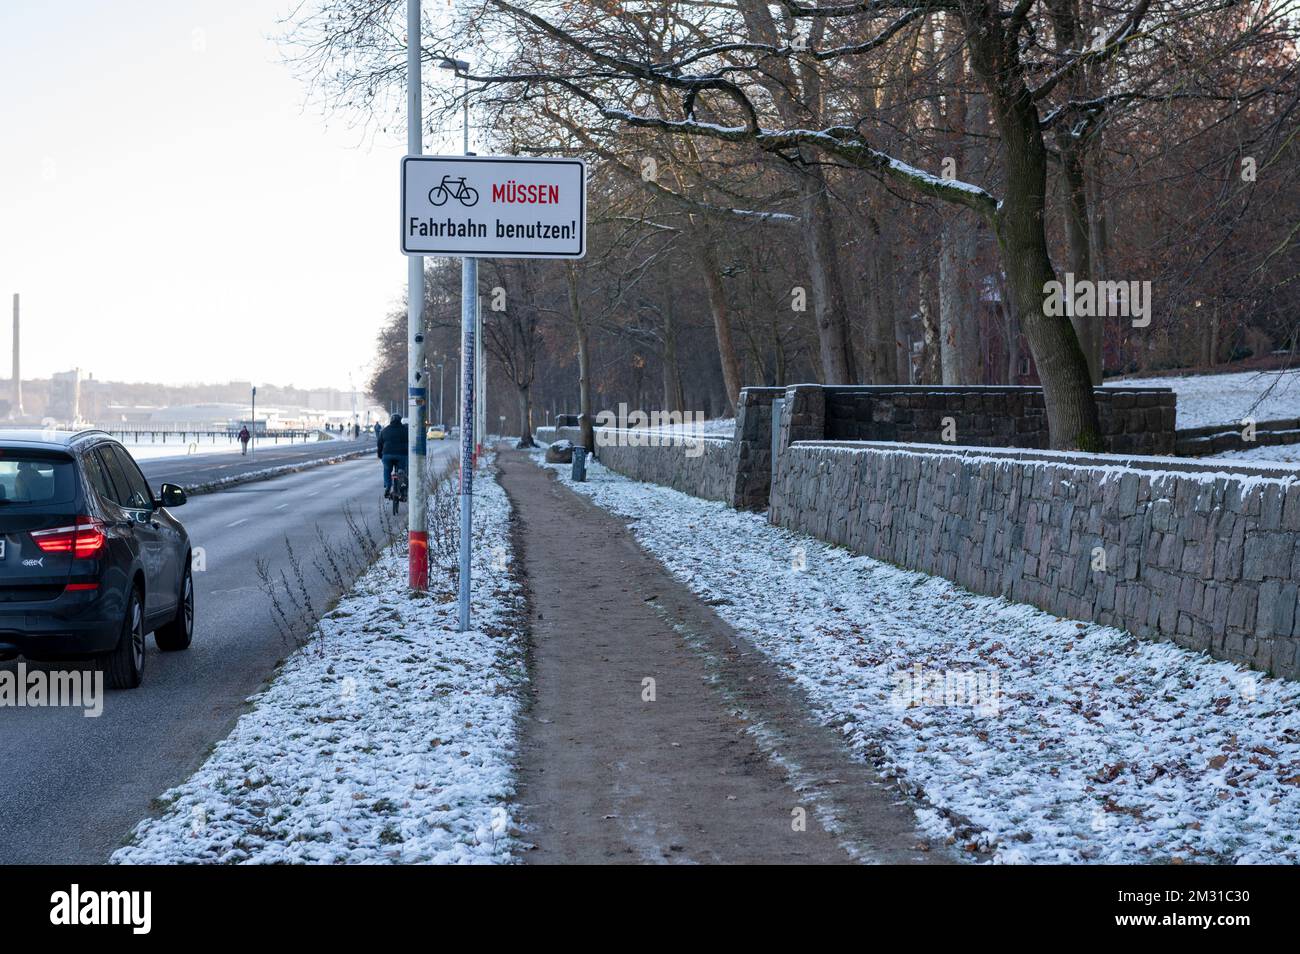 Kiel an der Uferpromenade Kiellinie Schild Radfahrer müssen die Fahrbahn benutzen Foto Stock